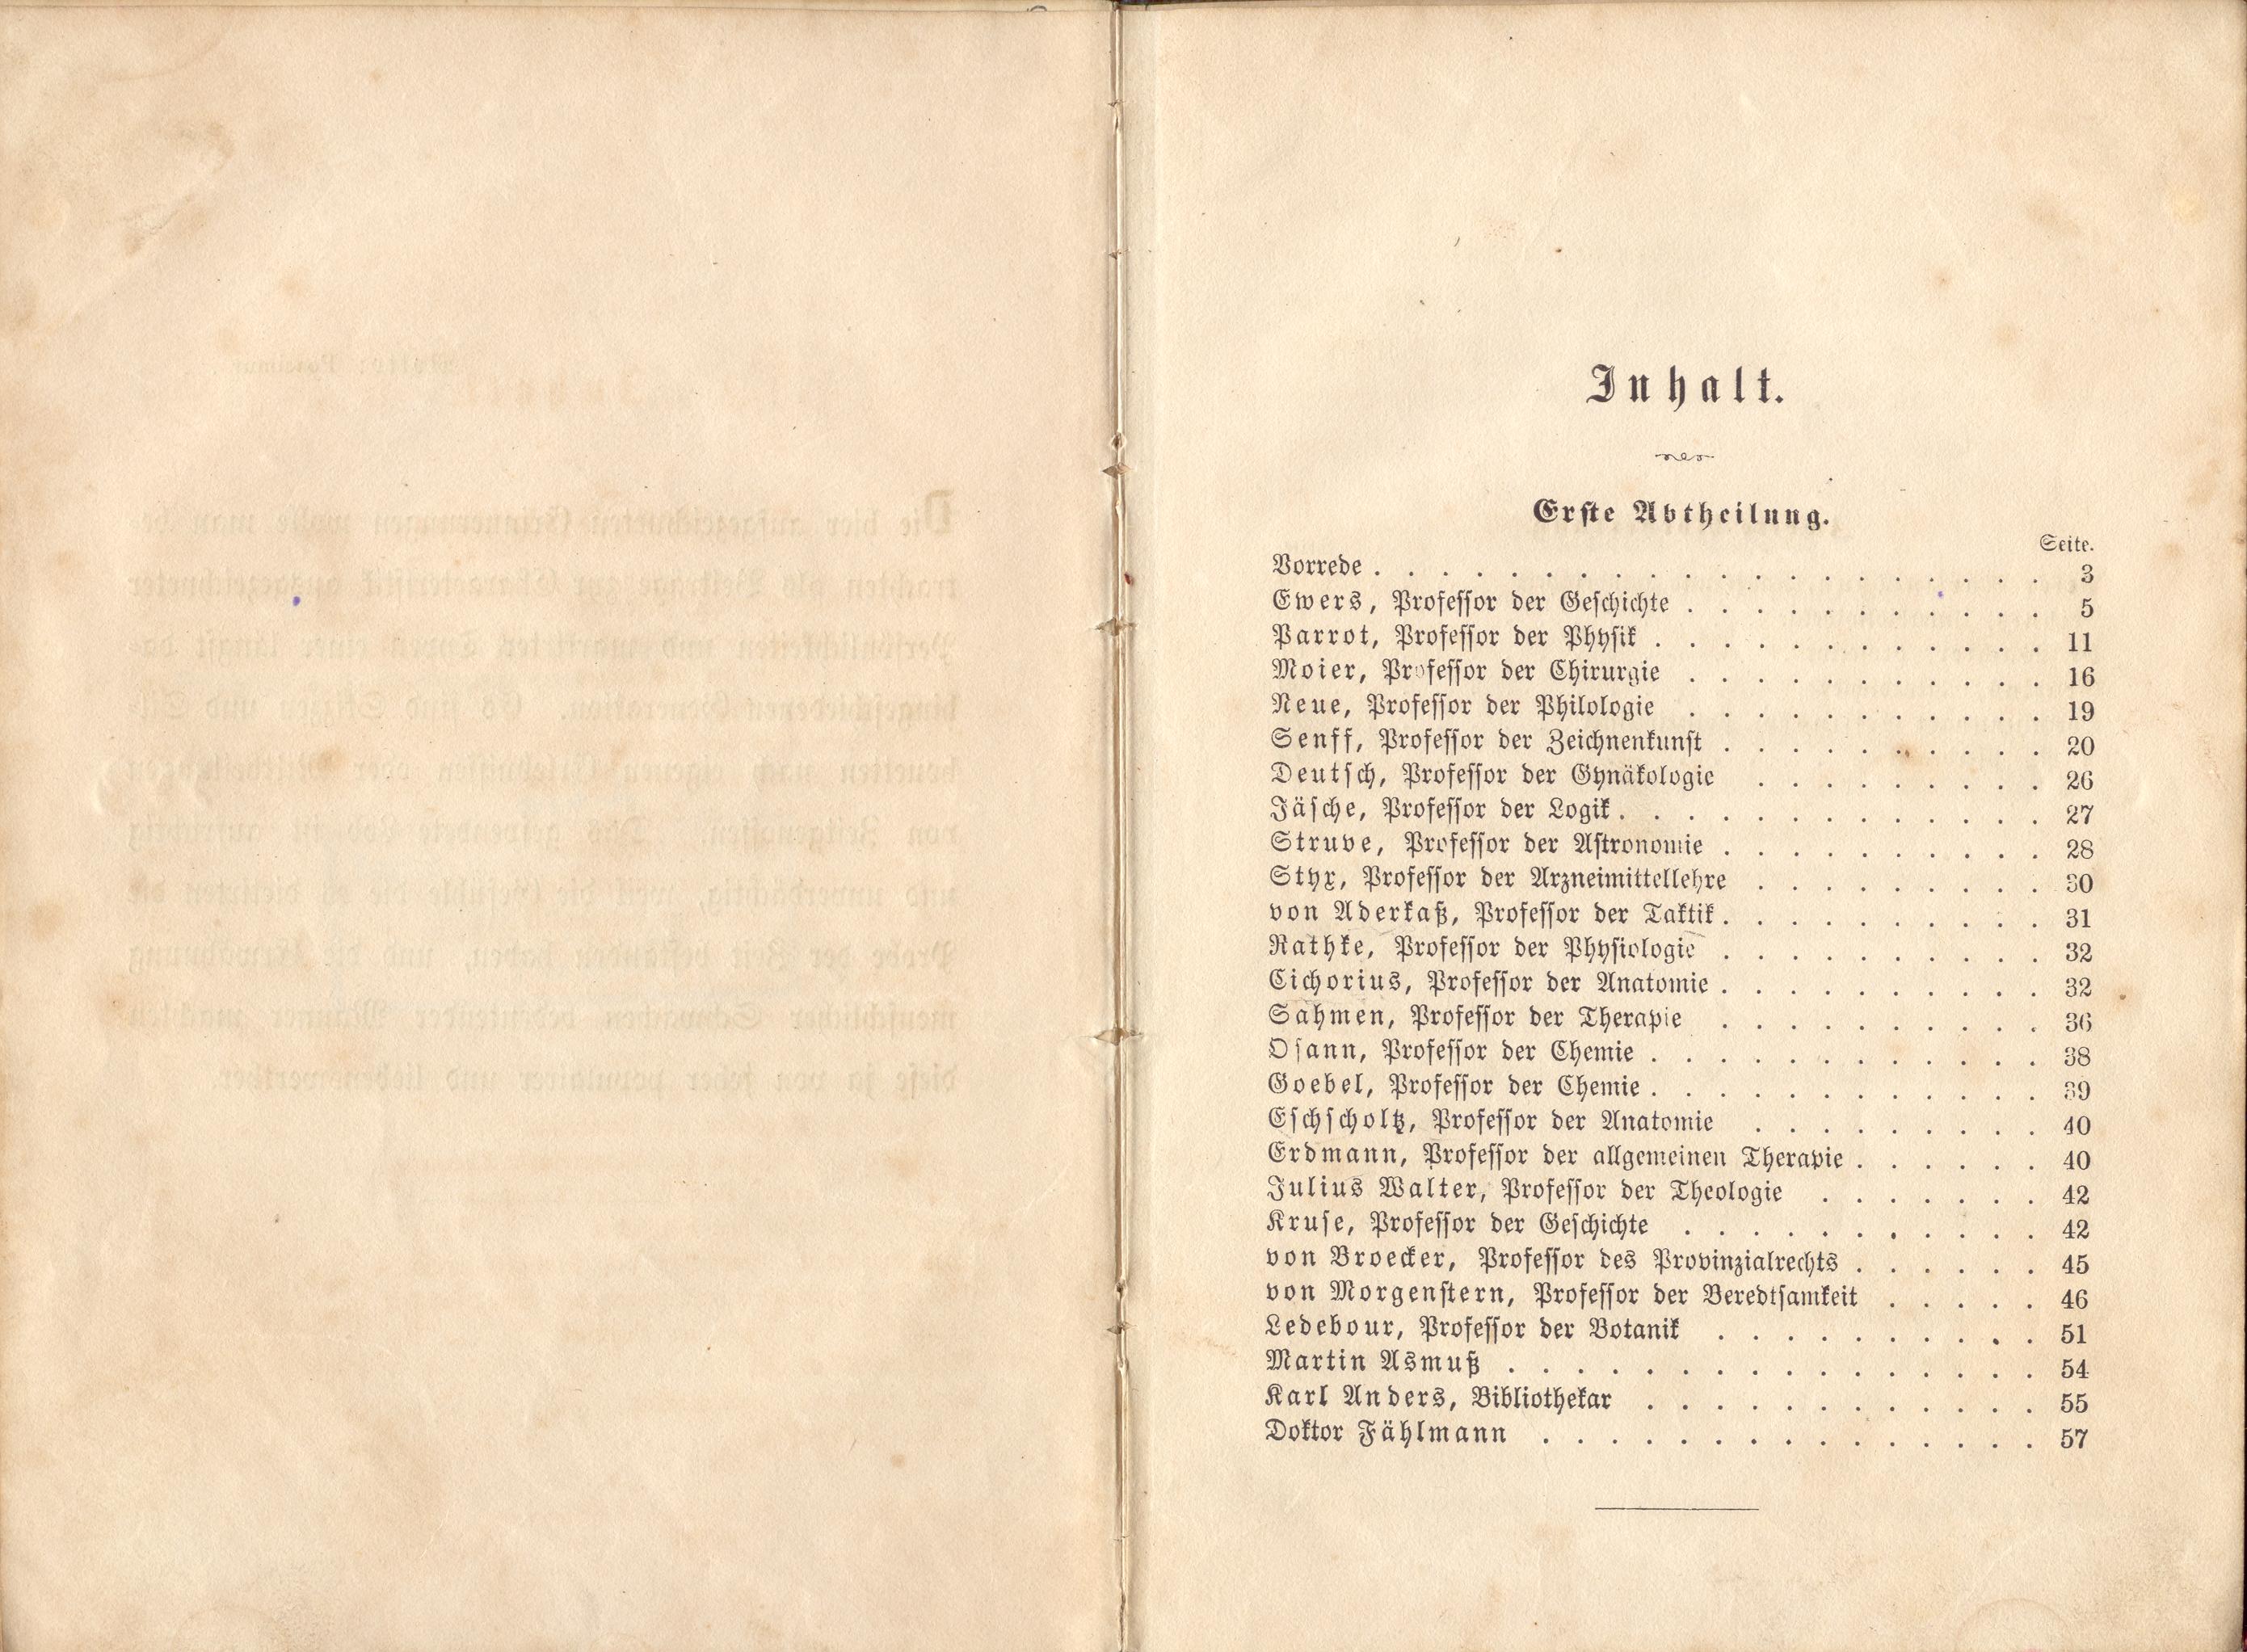 Dorpats Grössen und Typen (1868) | 4. Table of contents